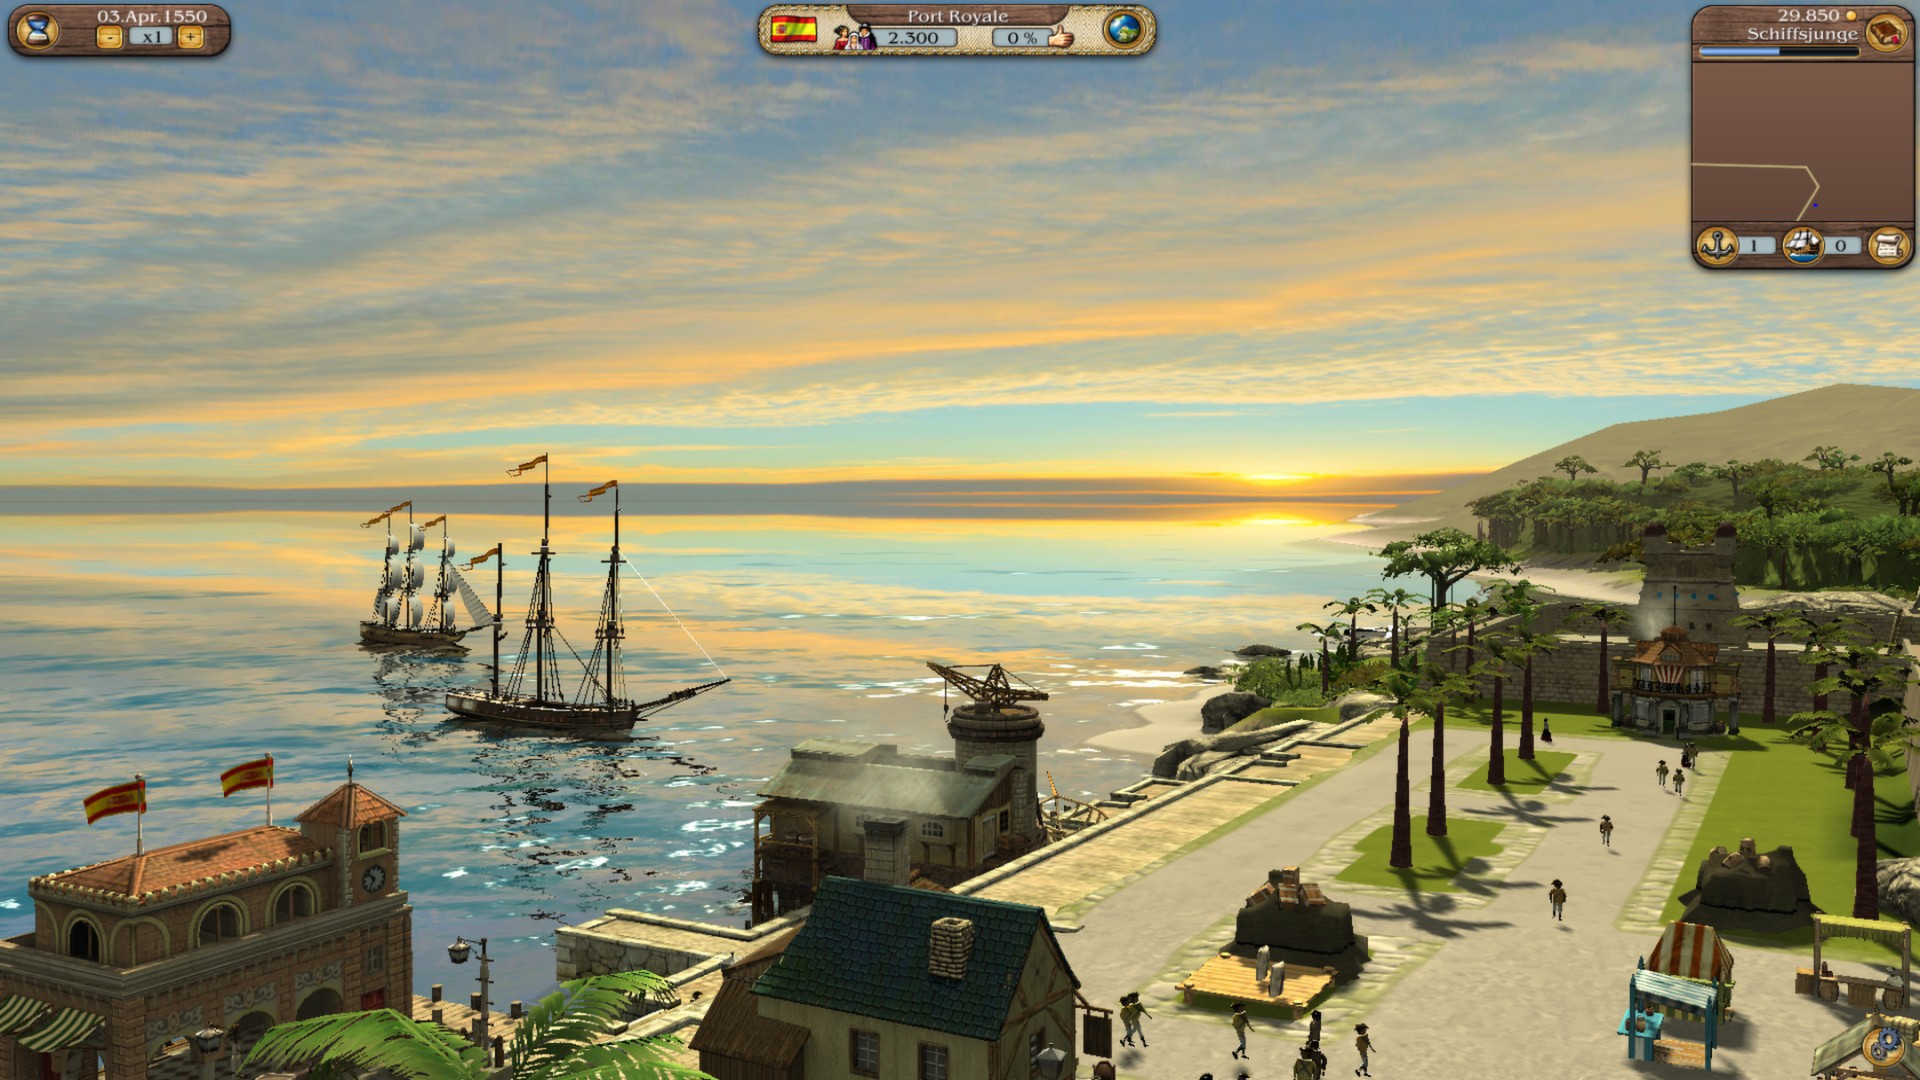 port royale 3 download